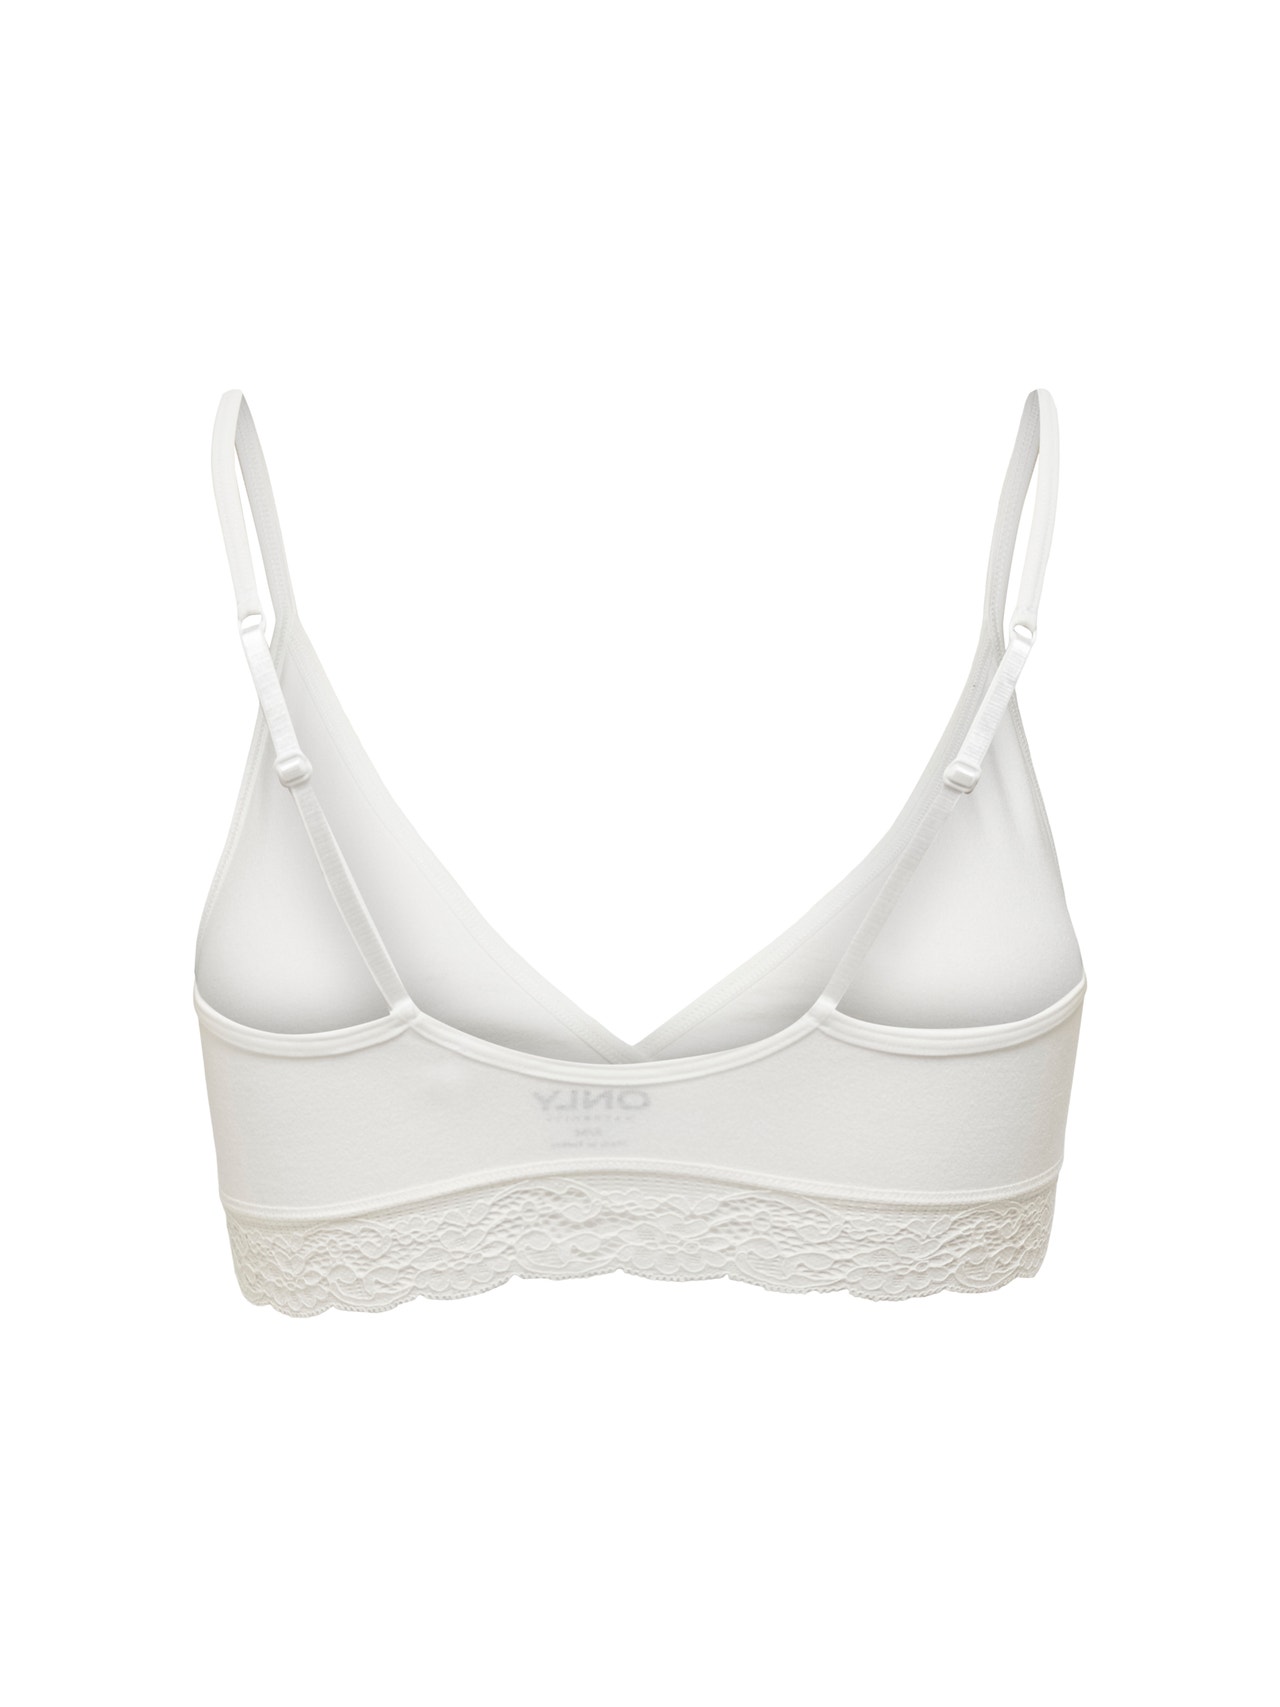 Nursing bra Mamacita. Color: white